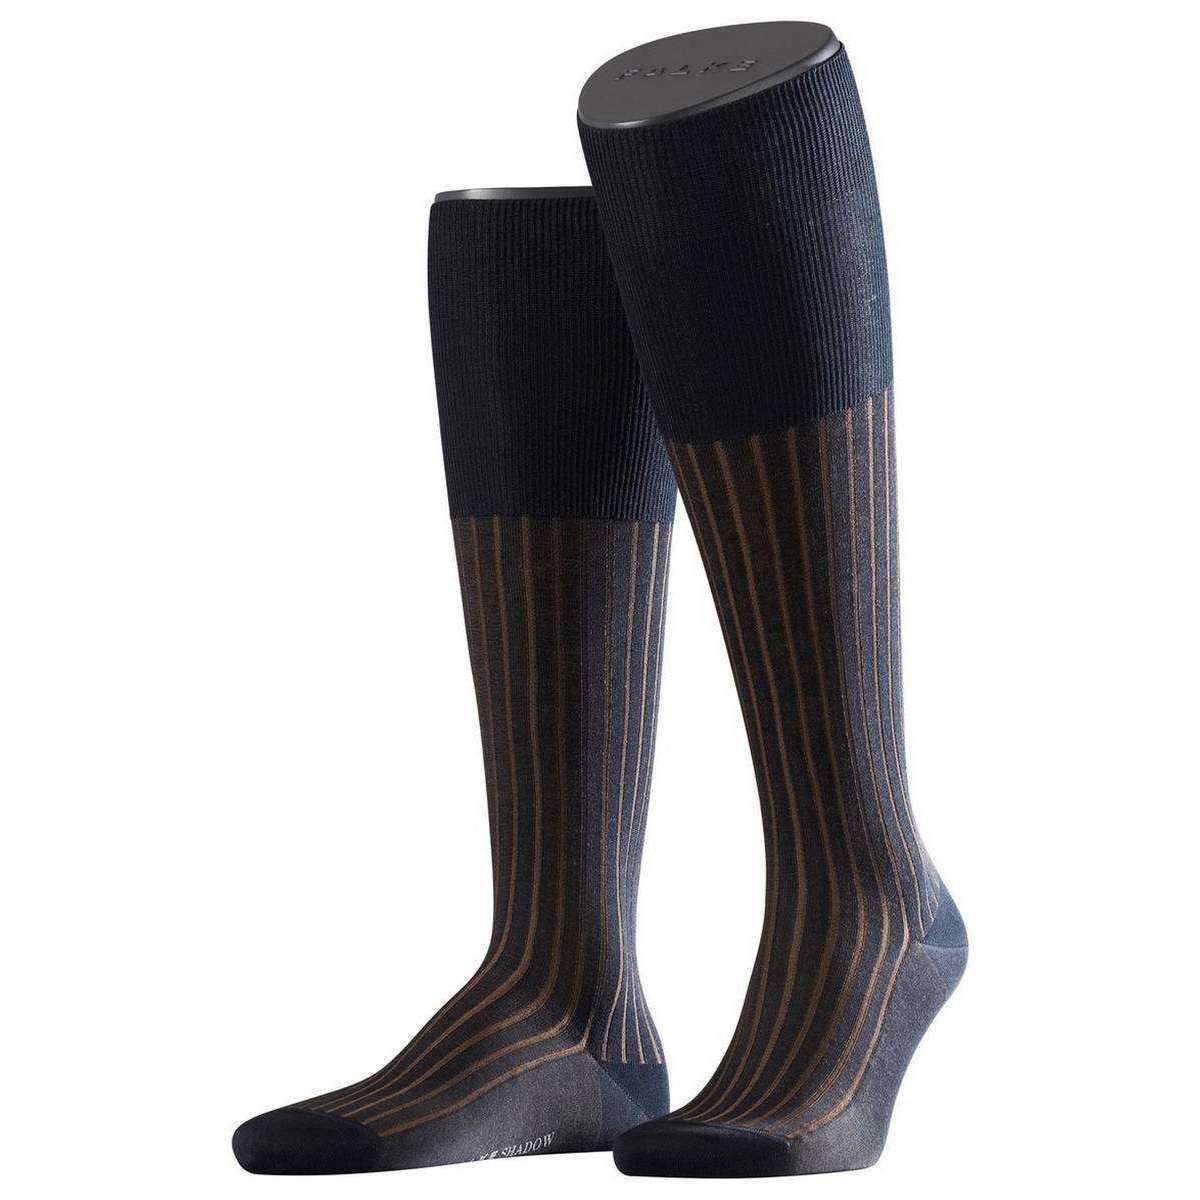 Falke Shadow Knee High Socks - Navy/Brown